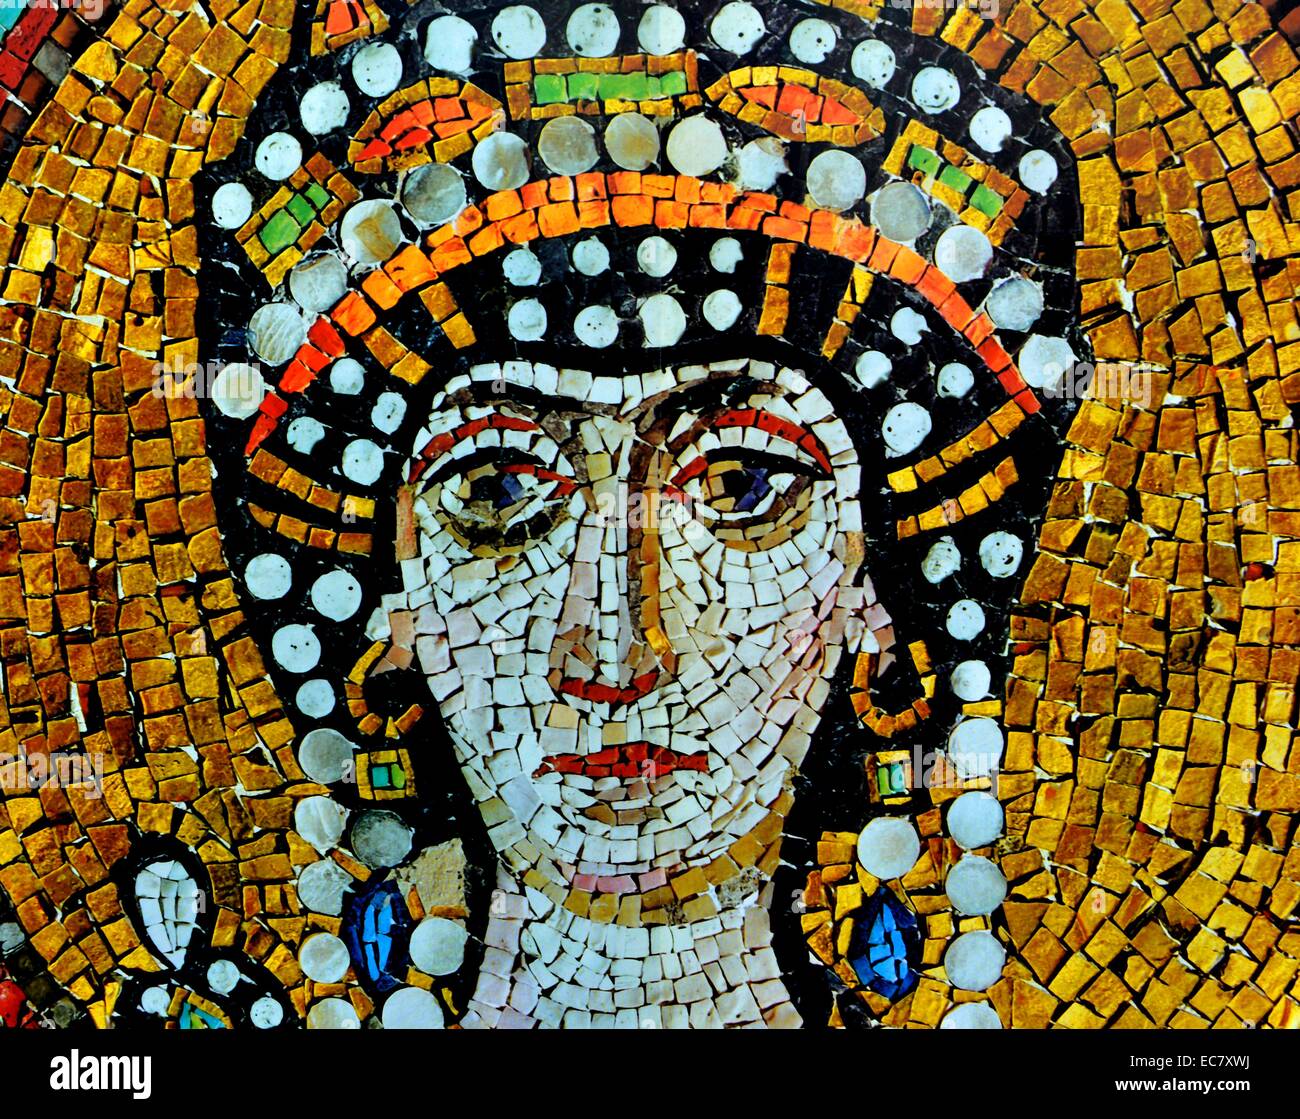 Die Kaiserin Theodora, (Frau von Justinian 1), eine mächtige Frau. Diese 6. Jahrhundert Mosaik ist von der Basilika von San Vitale, Ravenna. Stockfoto